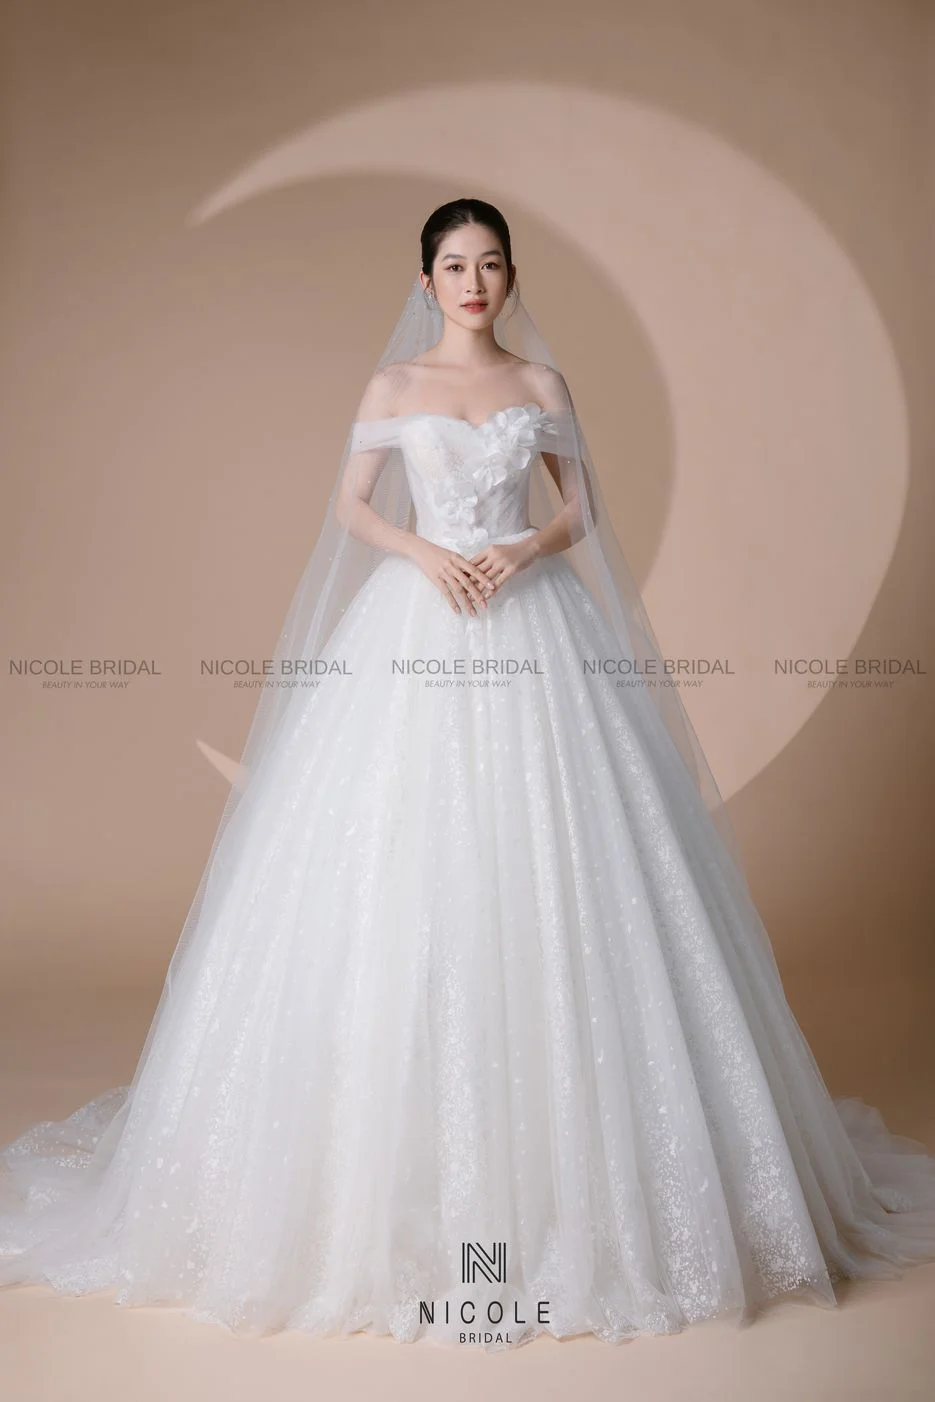 Váy cưới màu trắng phối siêu dễ nhìn siêu đẹp  Phụ kiện trang trí tiệc cưới